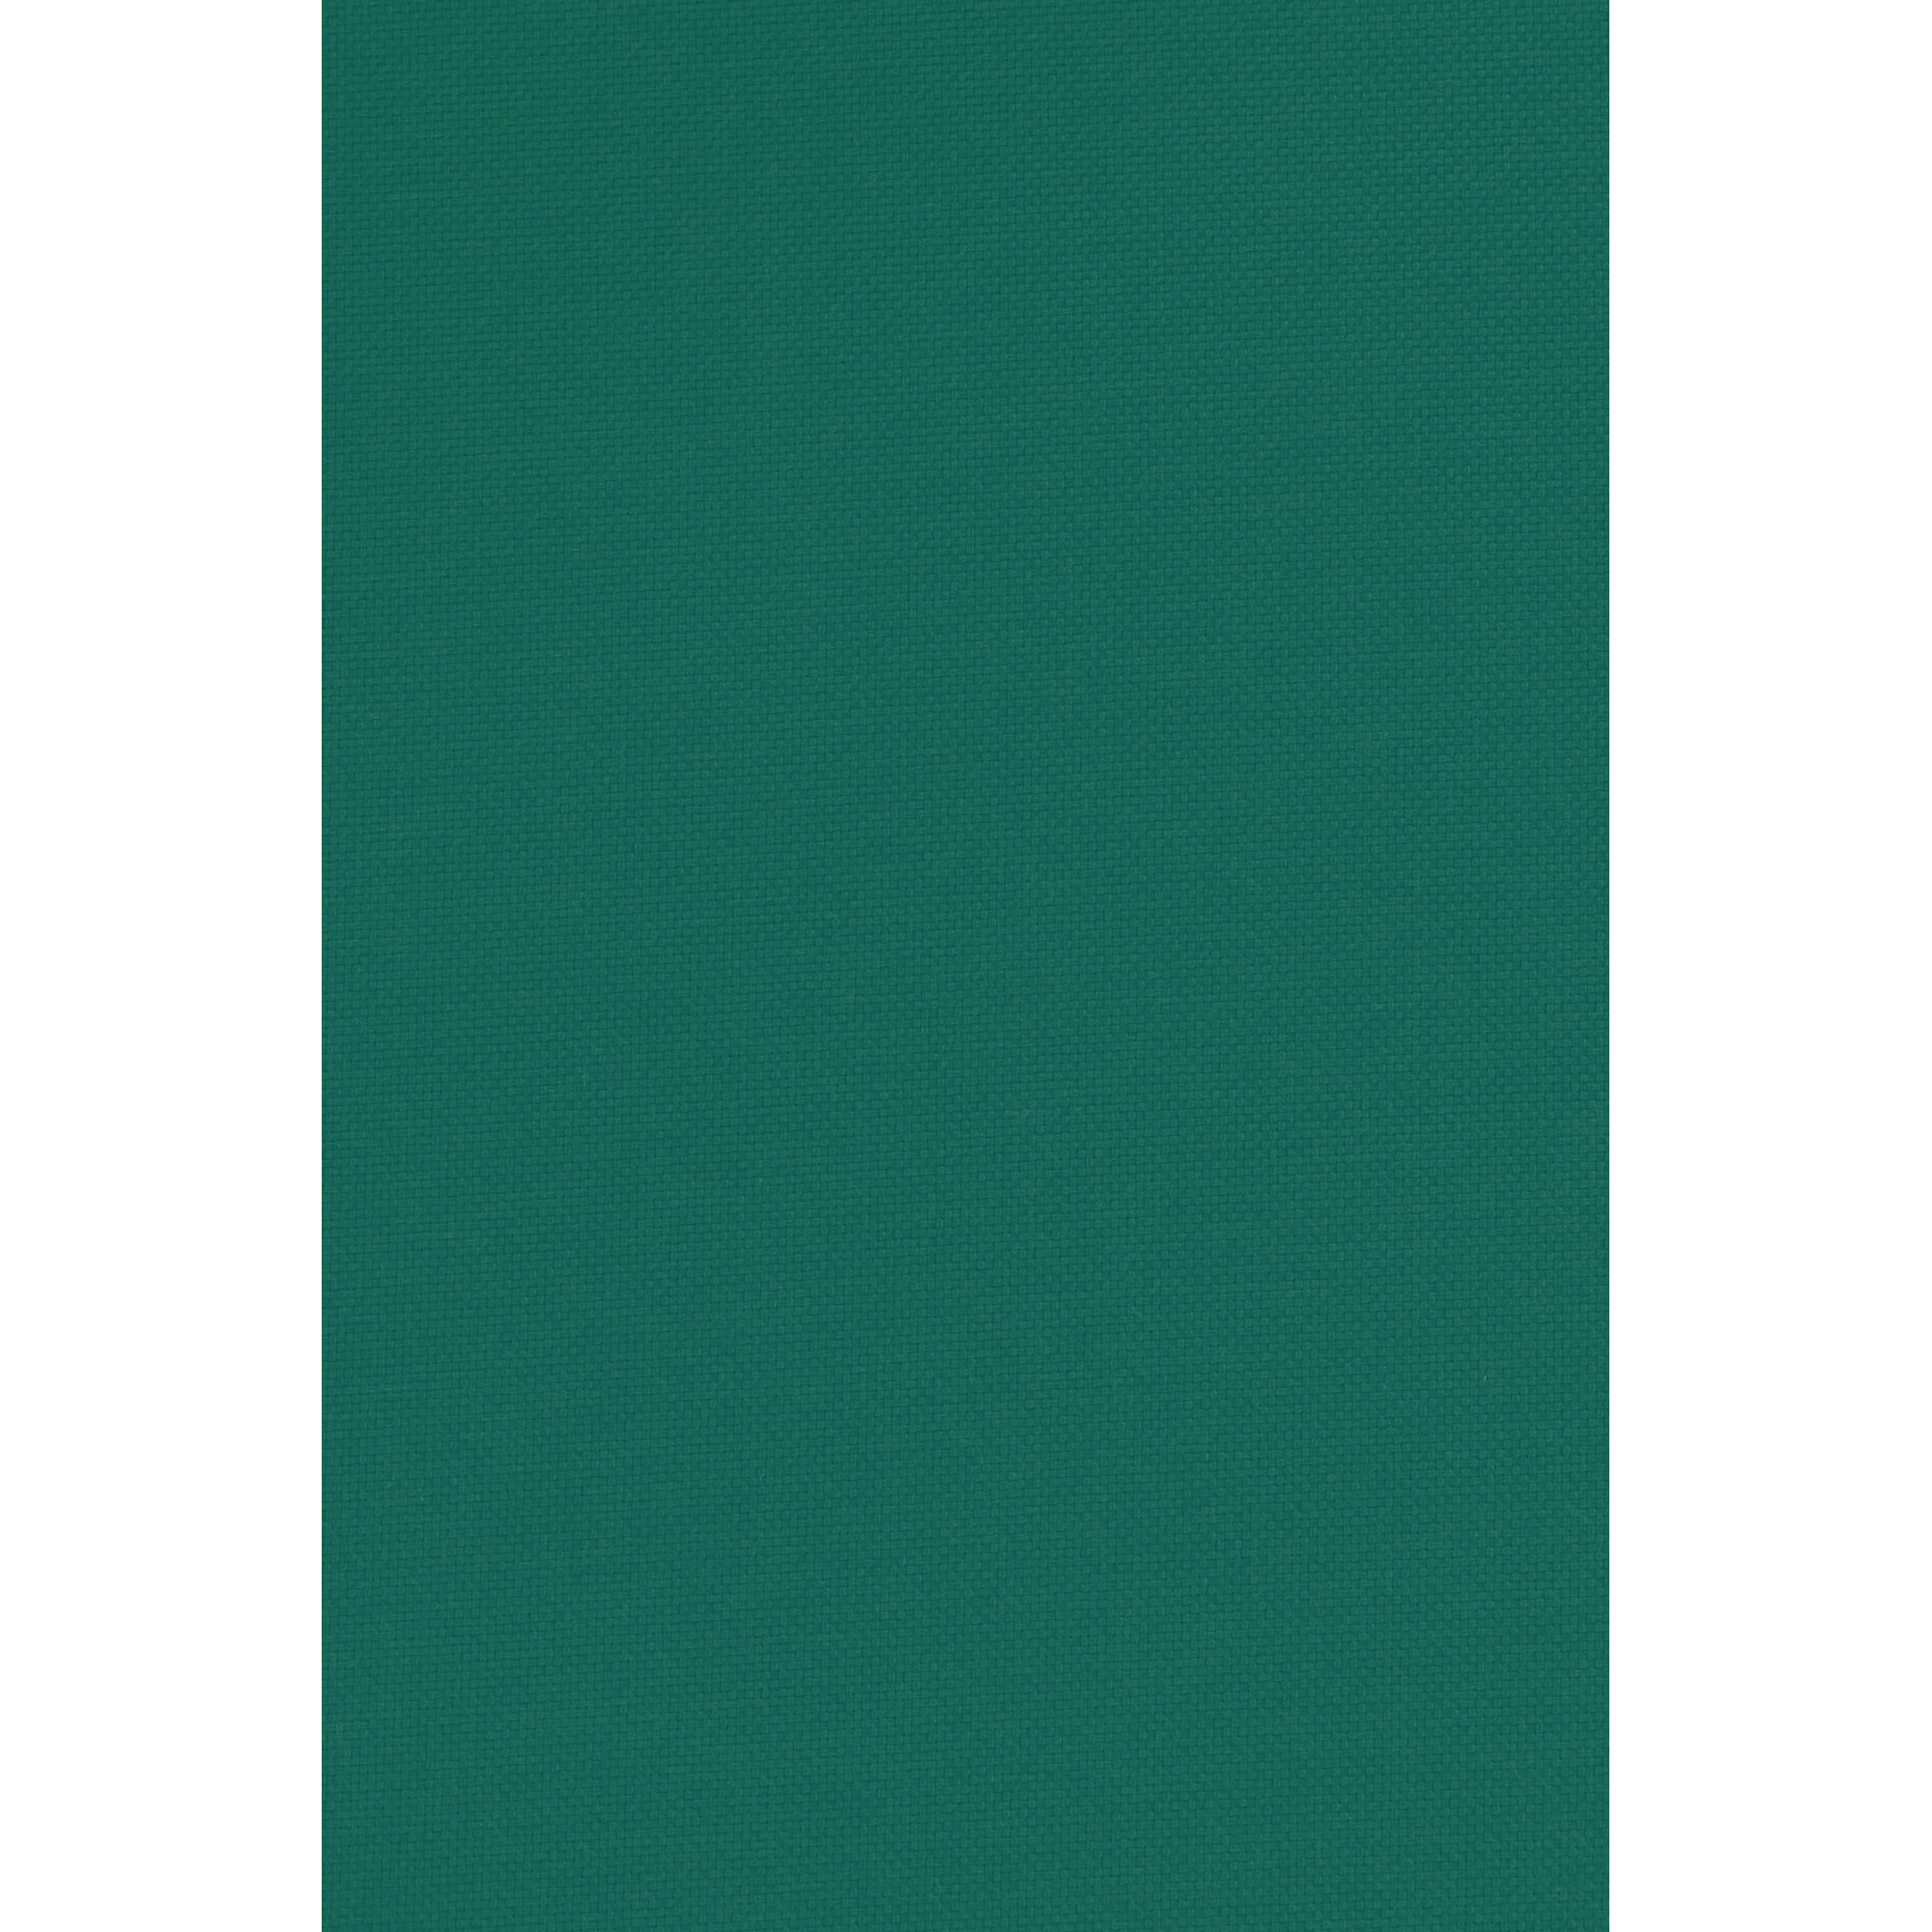 Sesselauflage 'Mirach' grün 100 x 48 x 6 cm + product picture